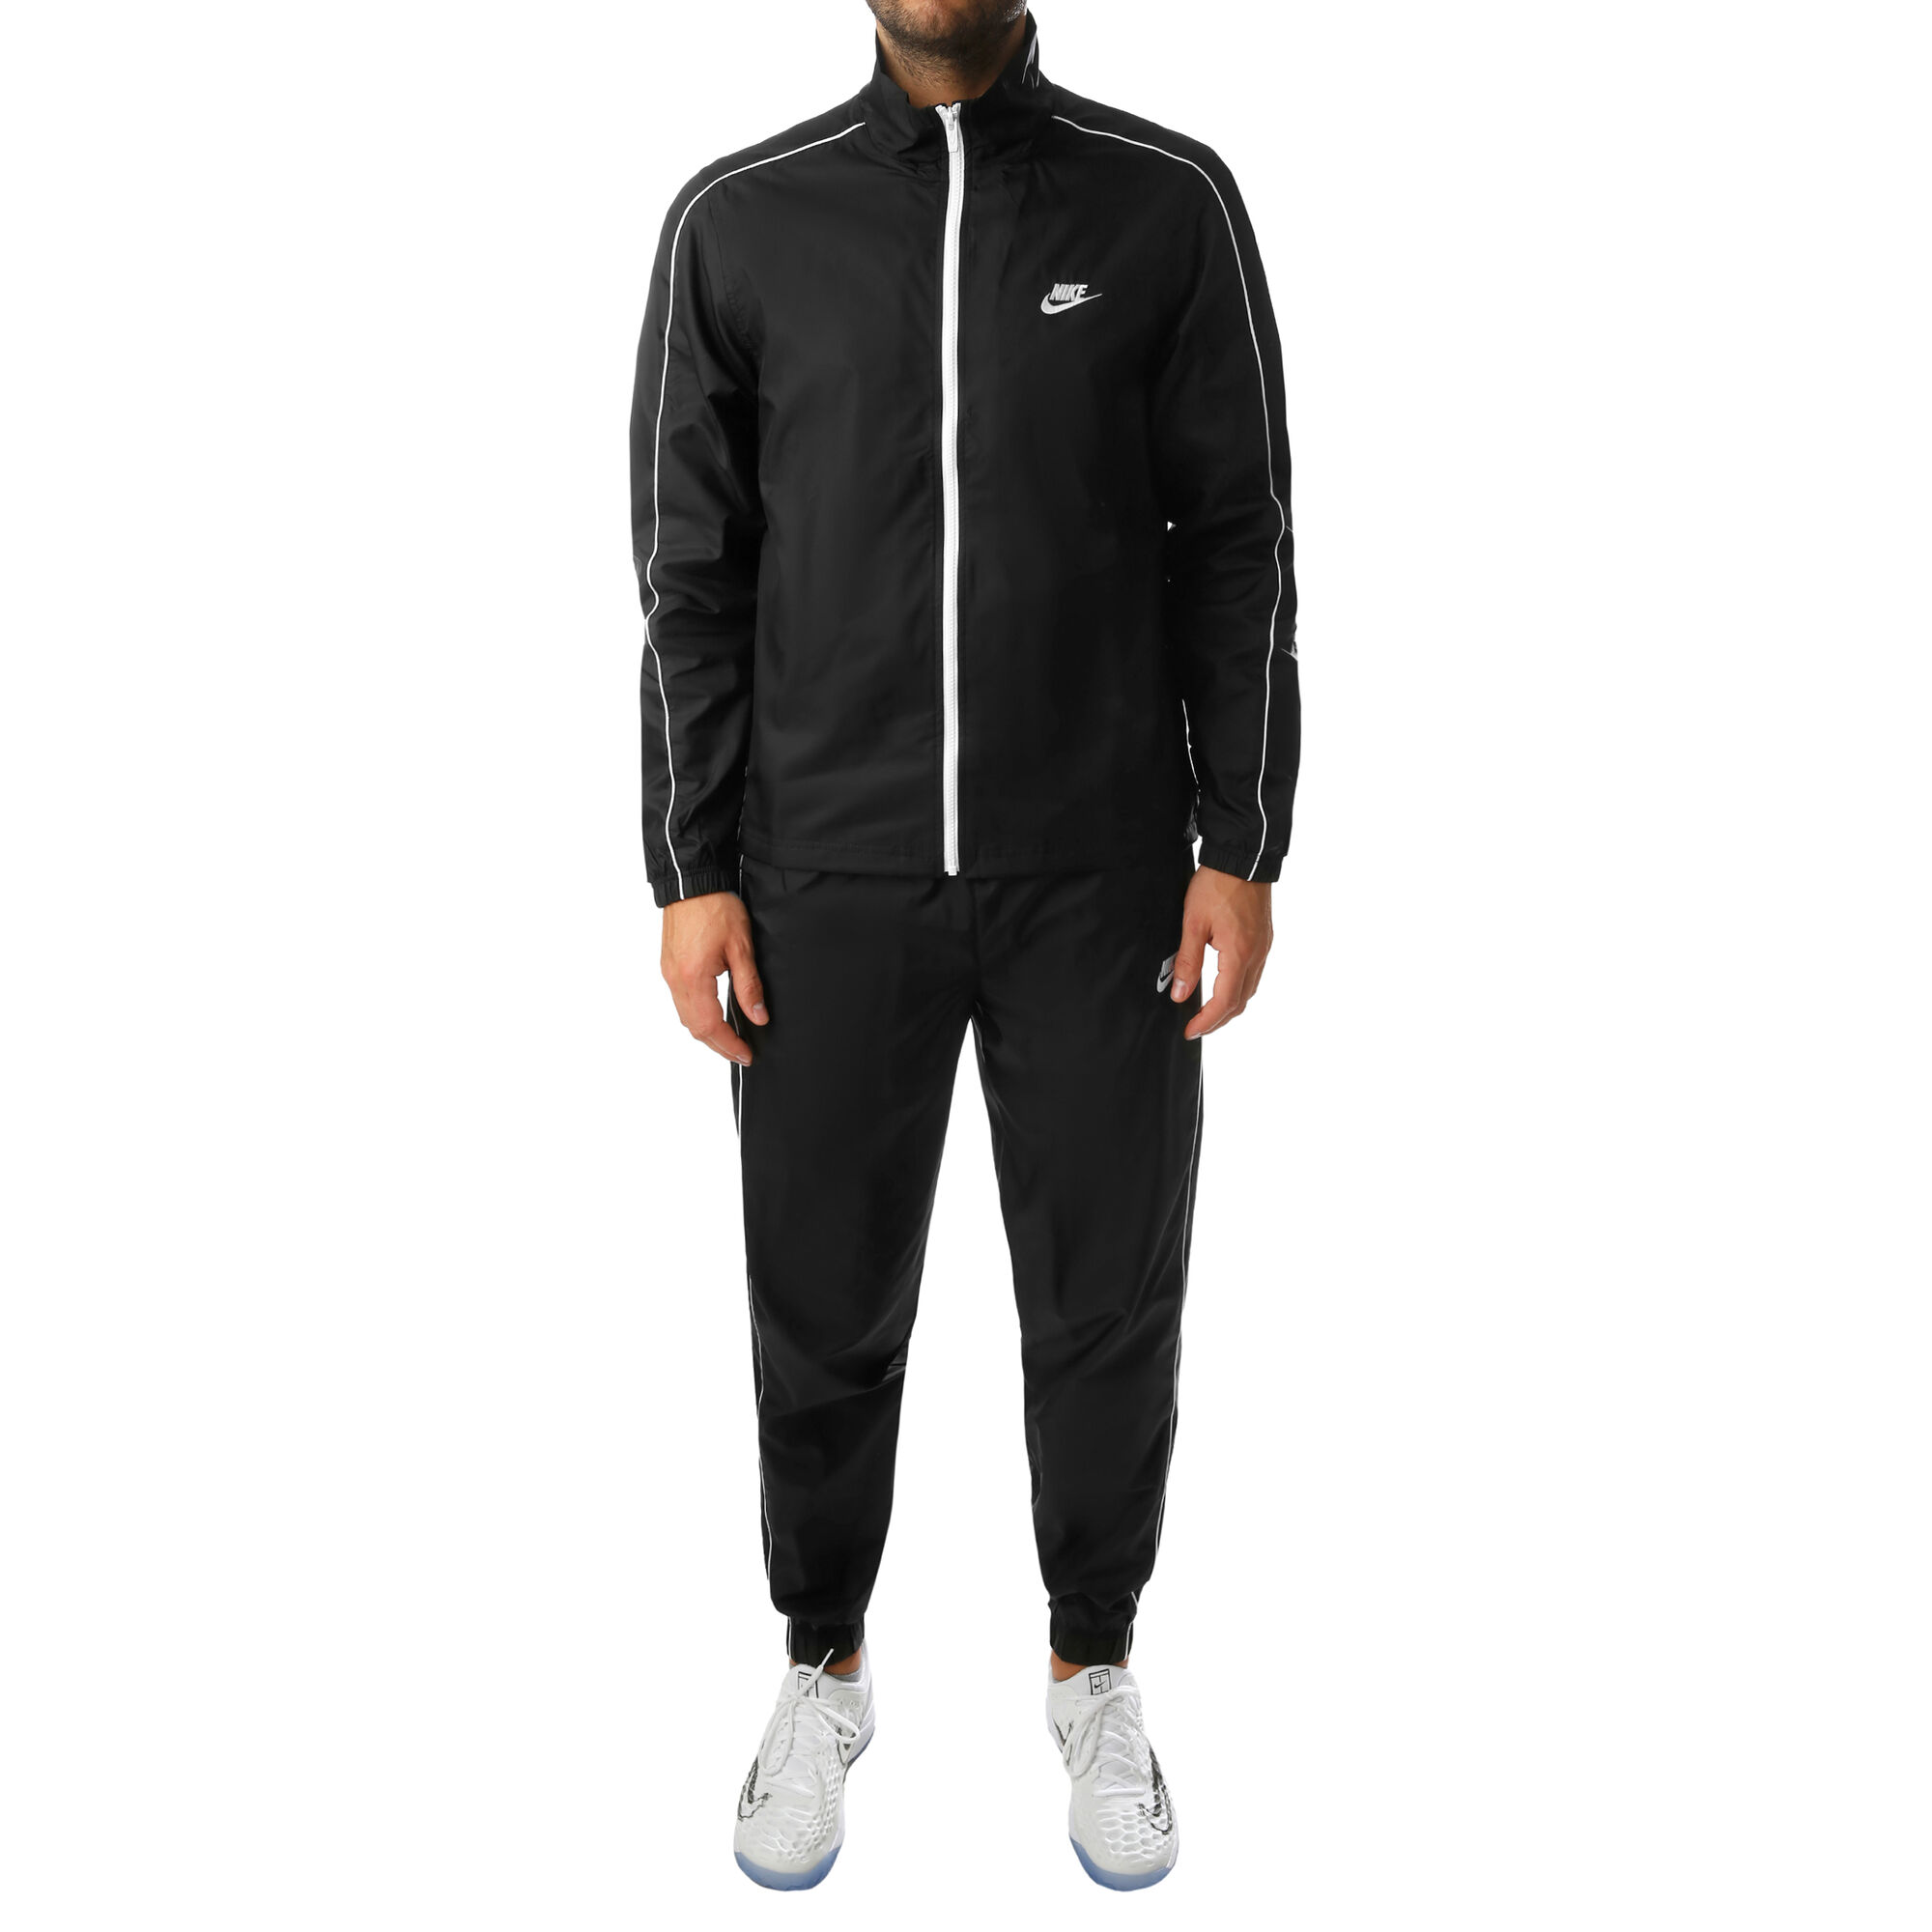 Rezumar quemar multa buy Nike Sportswear Woven Tracksuit Men - Black, White online | Tennis-Point